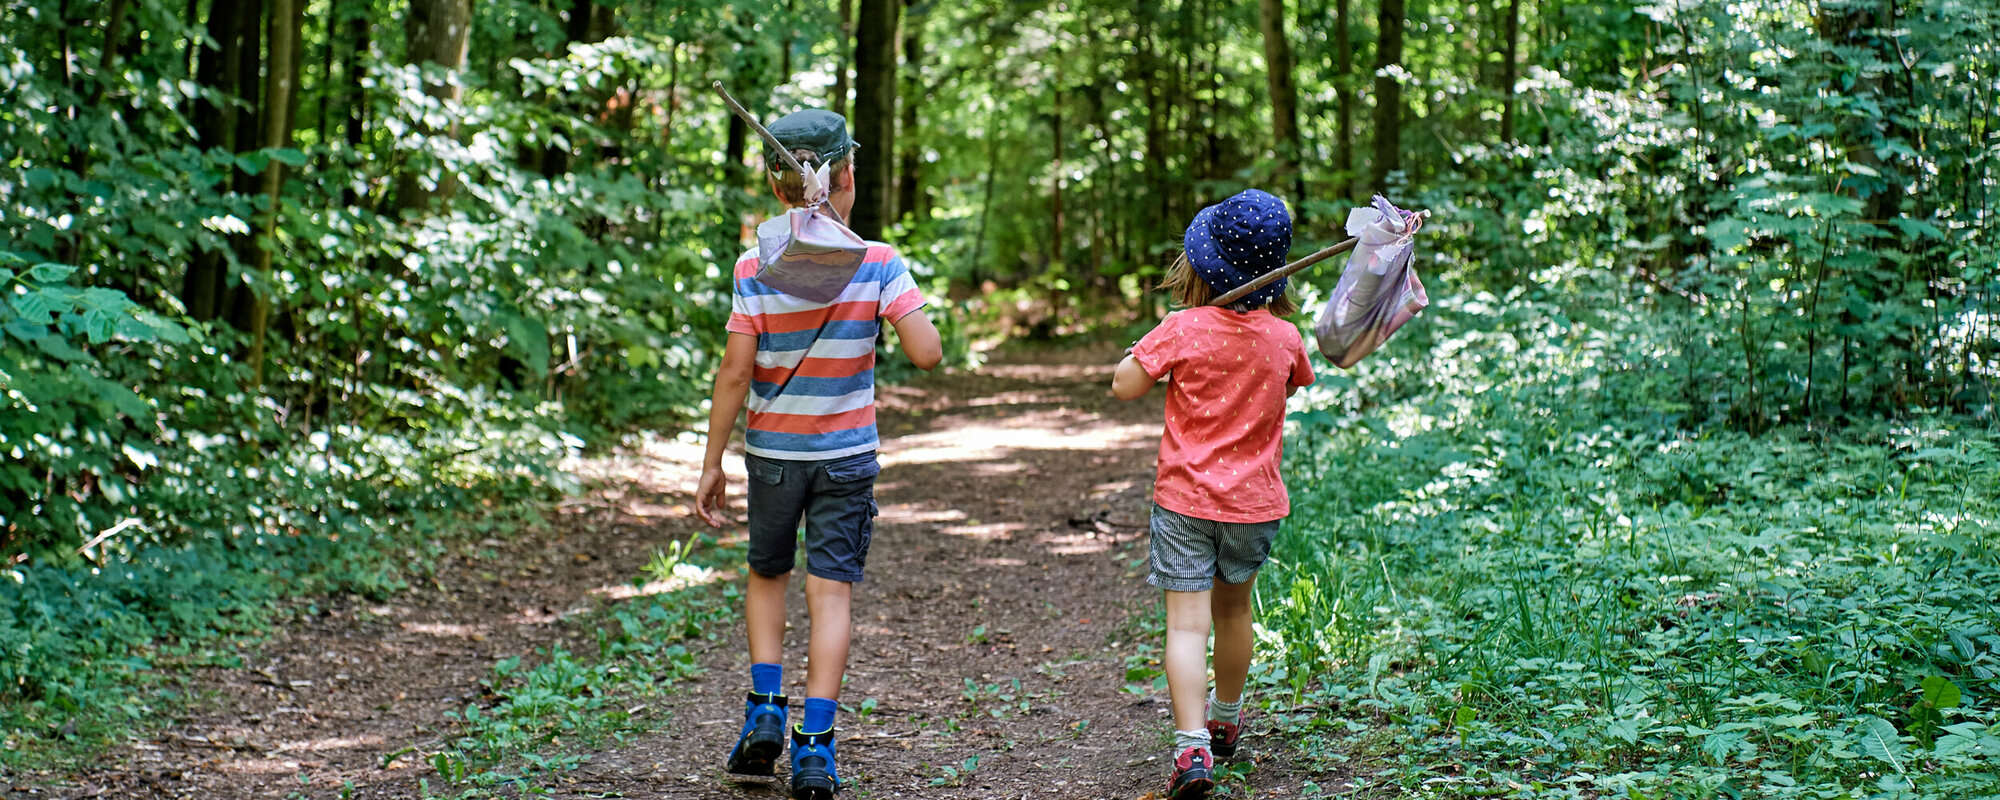 Ein junge mit gestreiften T-Shirt und ein Mädchen mit rotem T-Shirt laufen auf einem Wanderweg durch den Wald. Auf den Schultern haben beide einen Stock, an dessen Ende ein kleiner Beutel hängt.